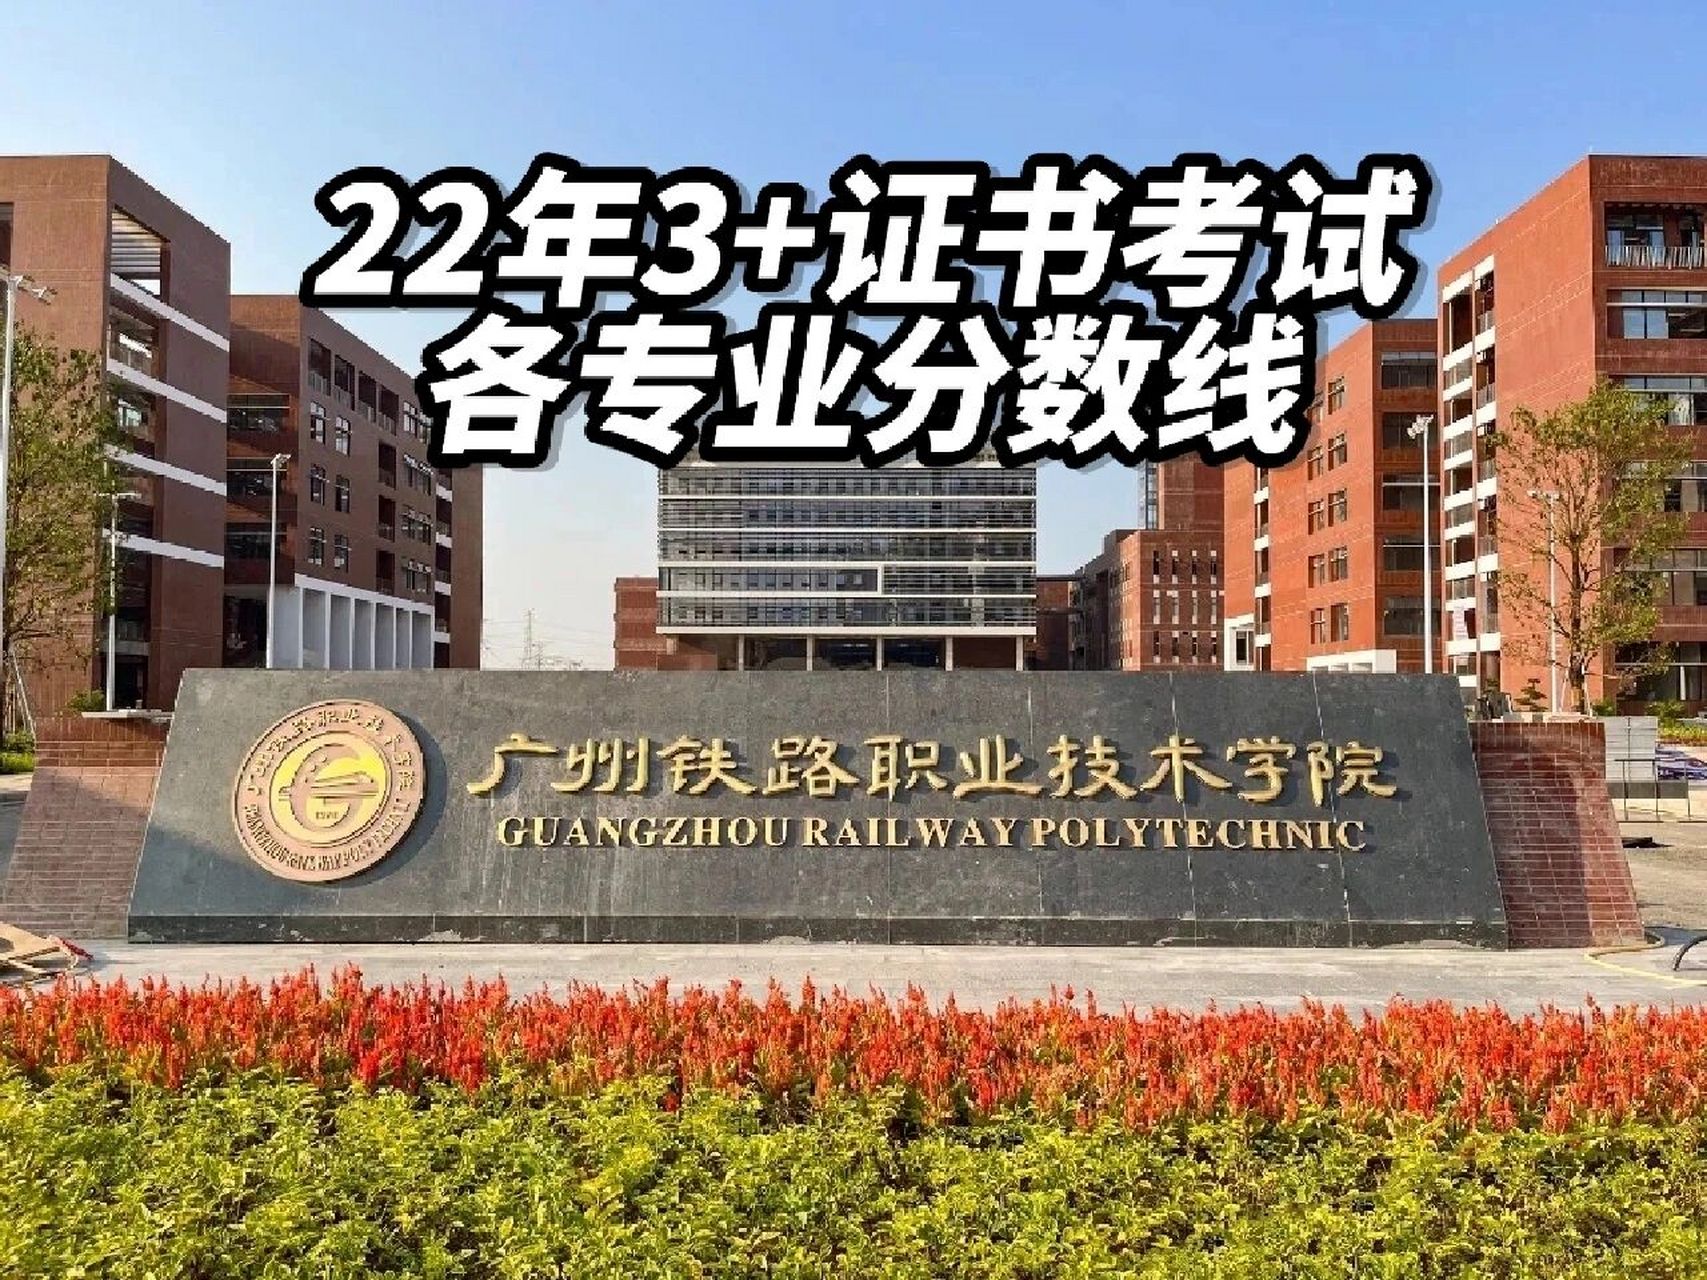 广州铁路职业技术学院 